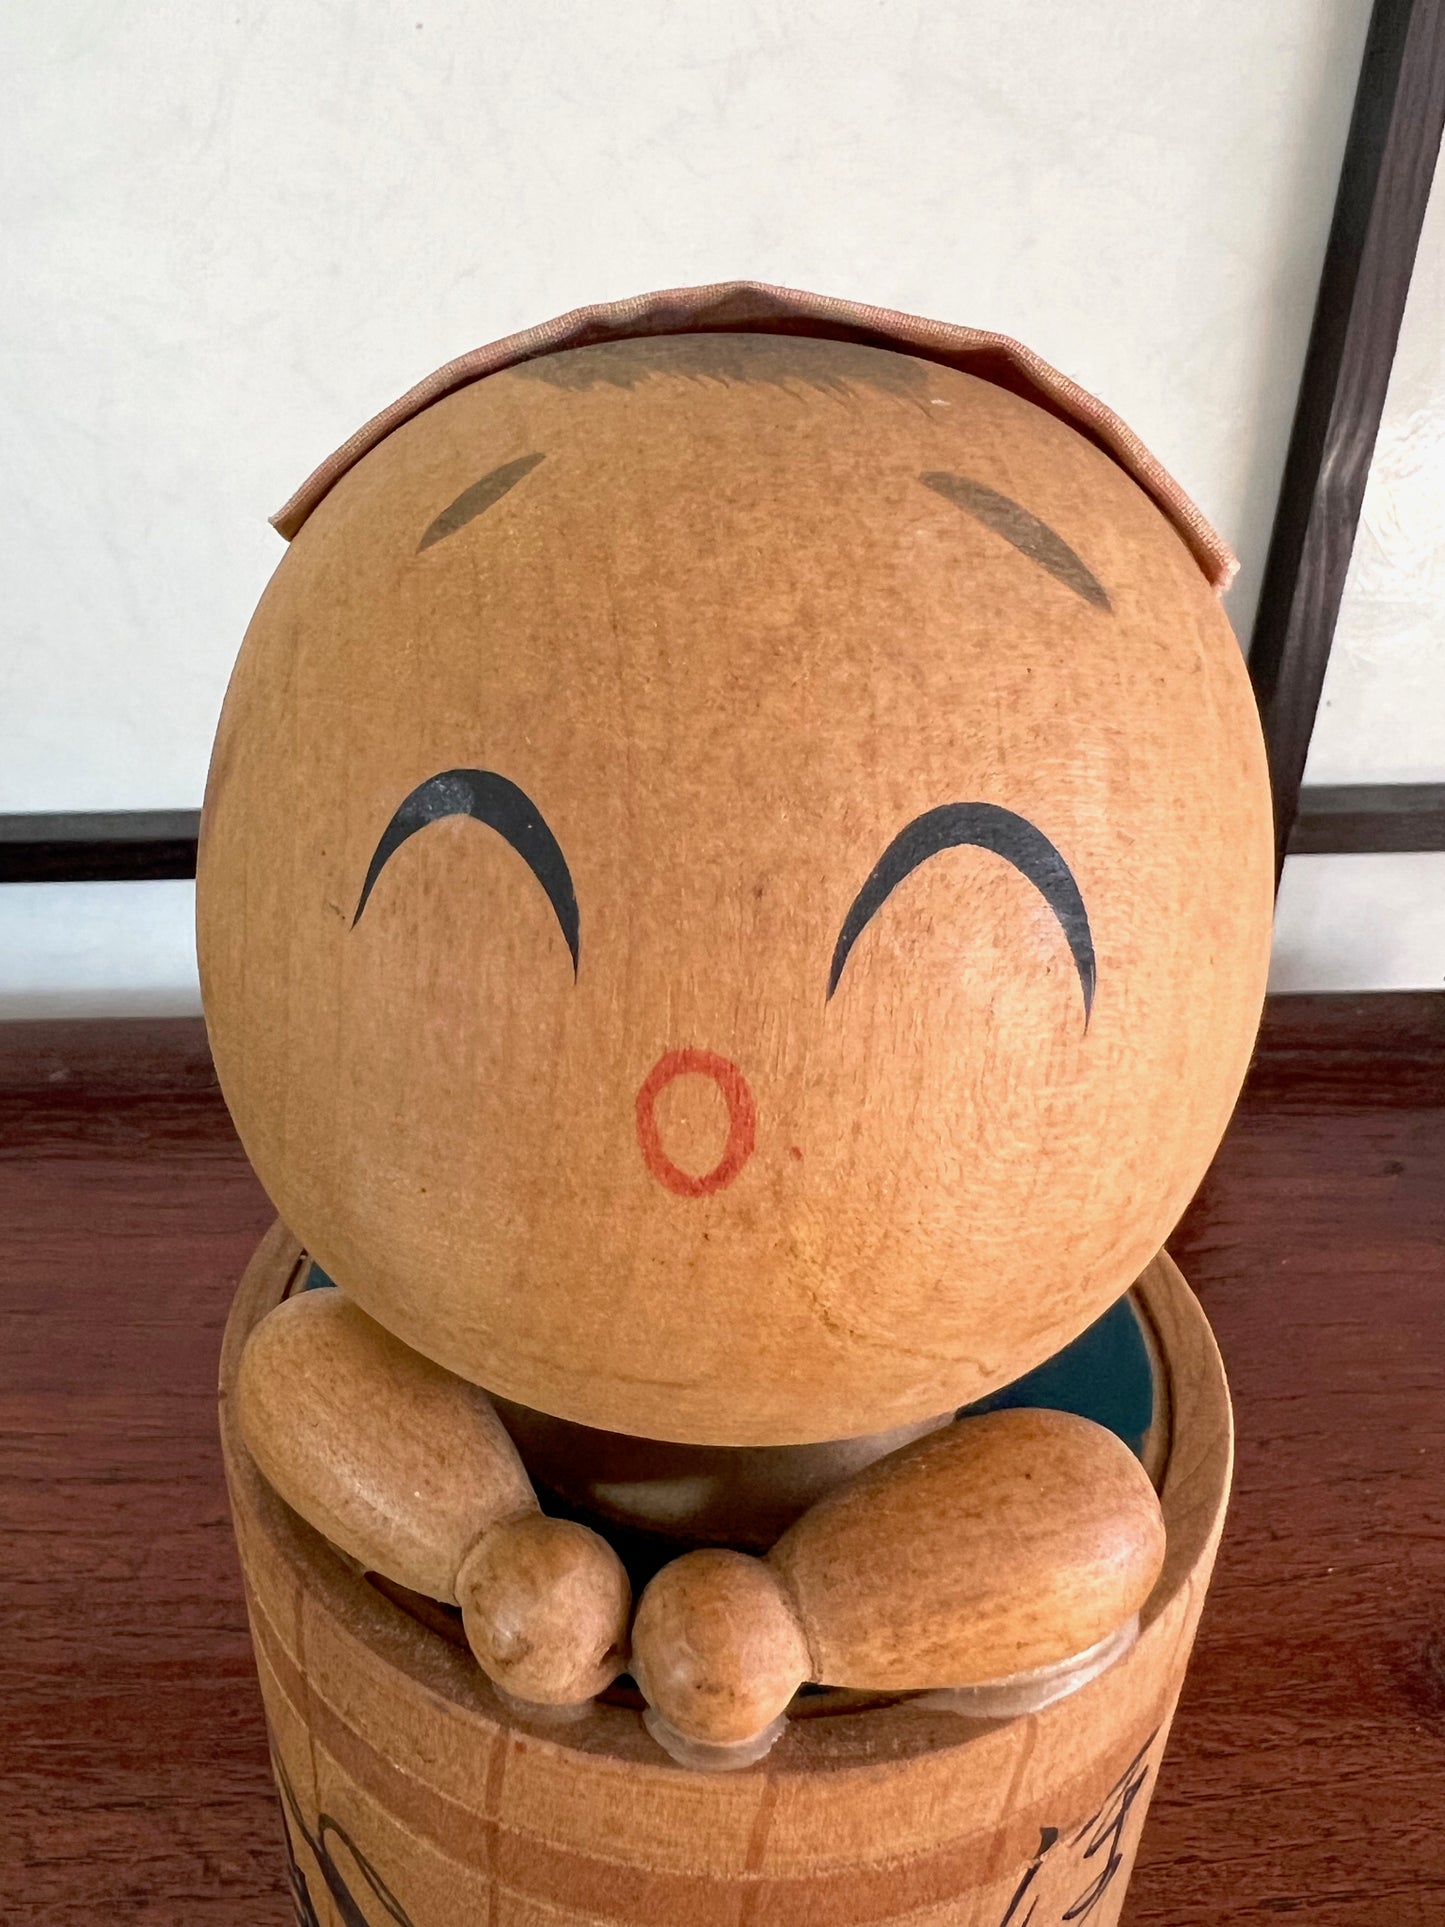 kokeshi poupée japonaise en bois dans son bain, son visage souriant